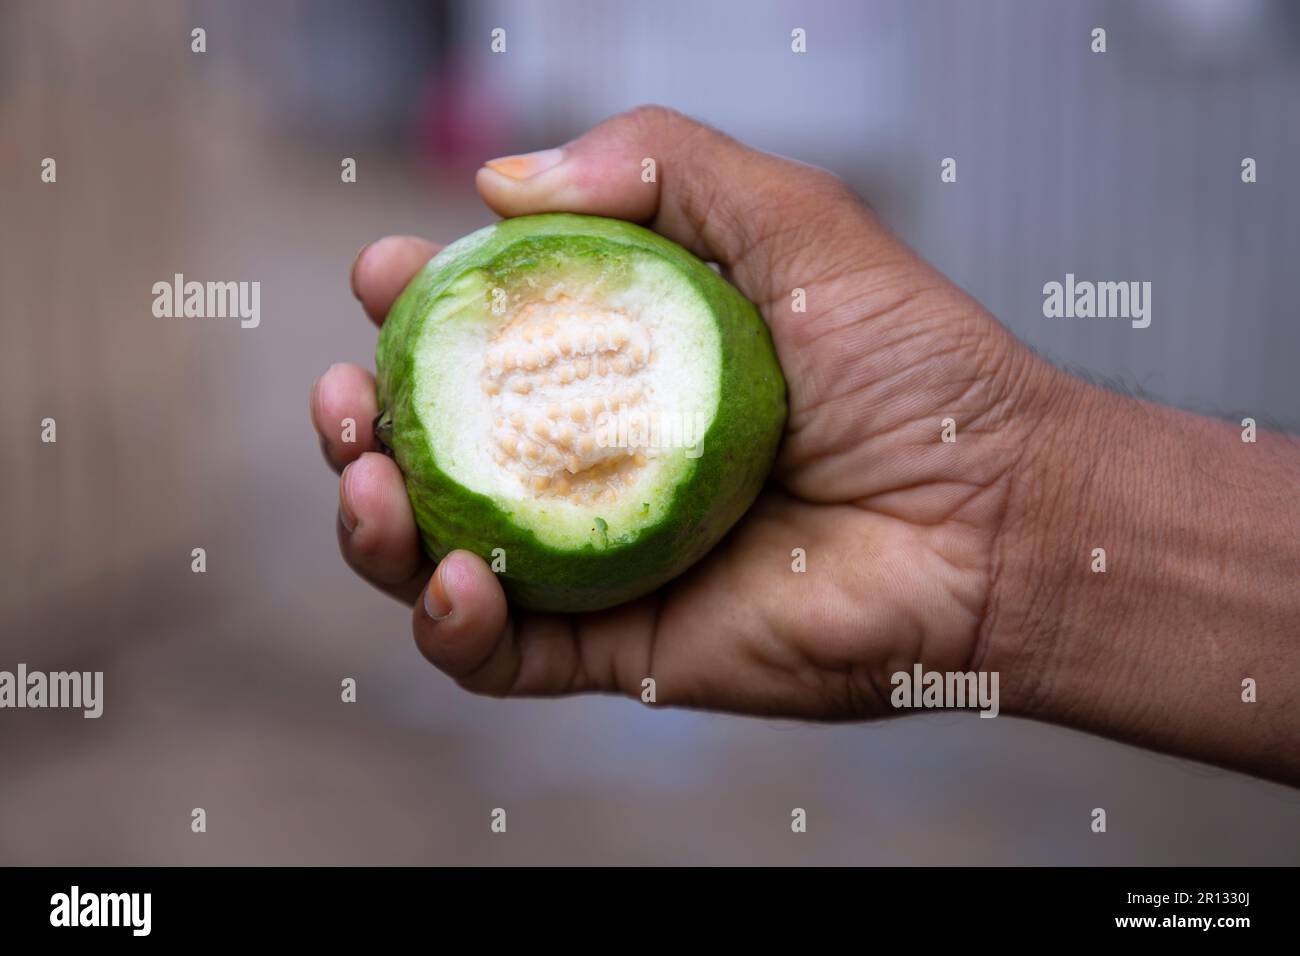 Bocconcini di guava a mano con profondità di campo poco profonda Foto Stock